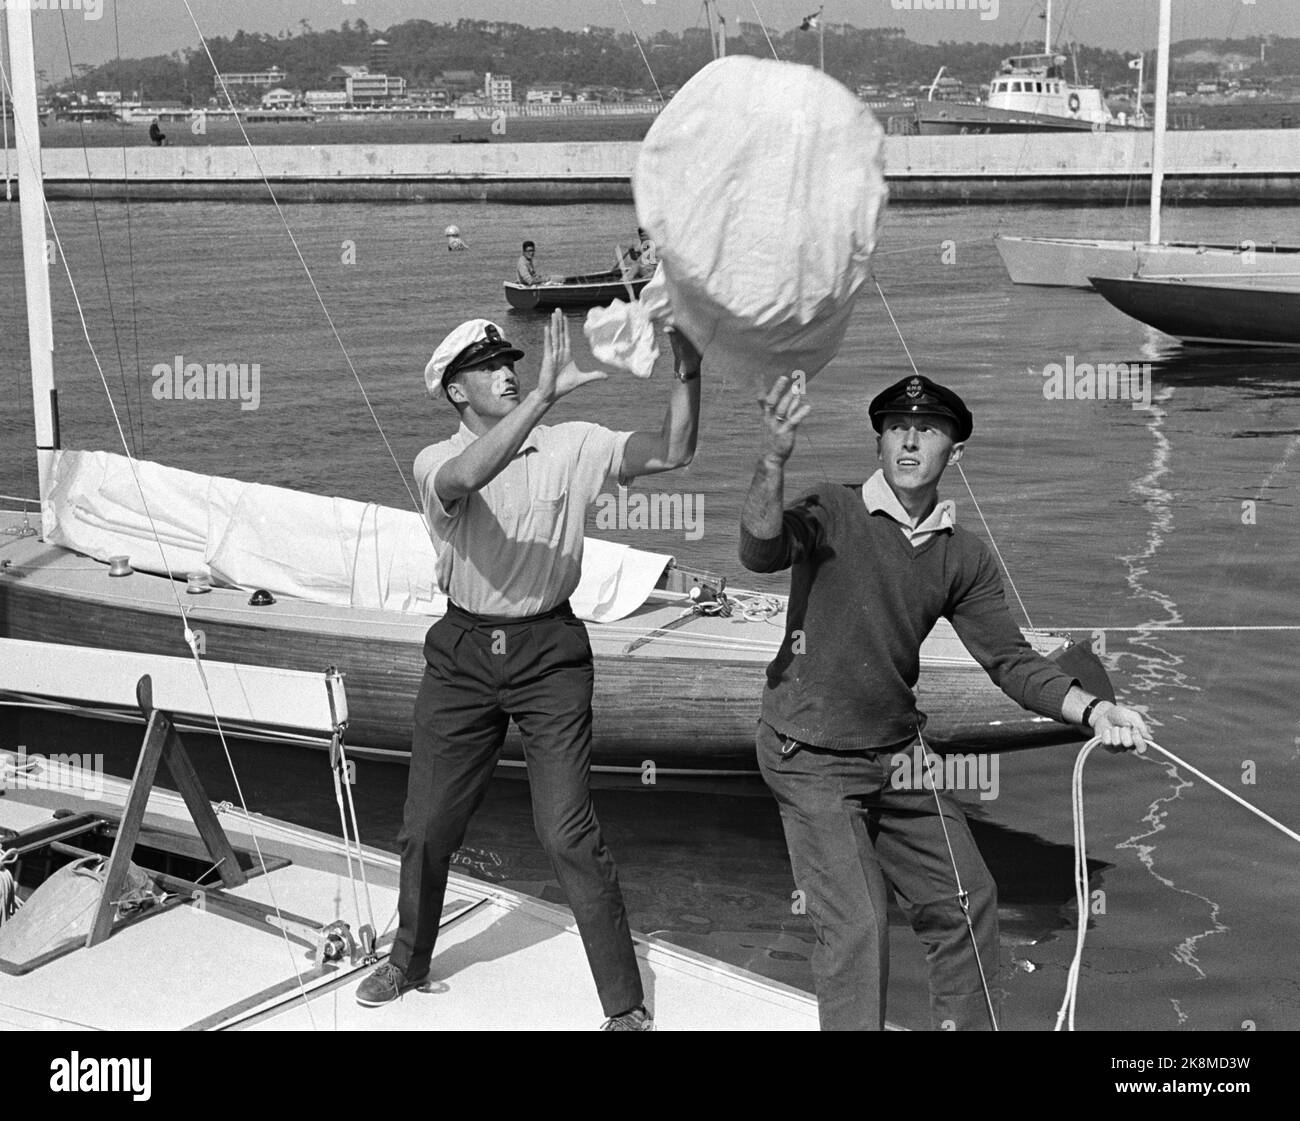 Tokyo, Japon Jeux Olympiques d'été 1964 à Tokyo. Le Prince héritier Harald participe à l'équipe olympique norvégienne de voile. T. H. Stein Føyen. Reçoit le sac du navire. Photo archive NTB / ntb Banque D'Images